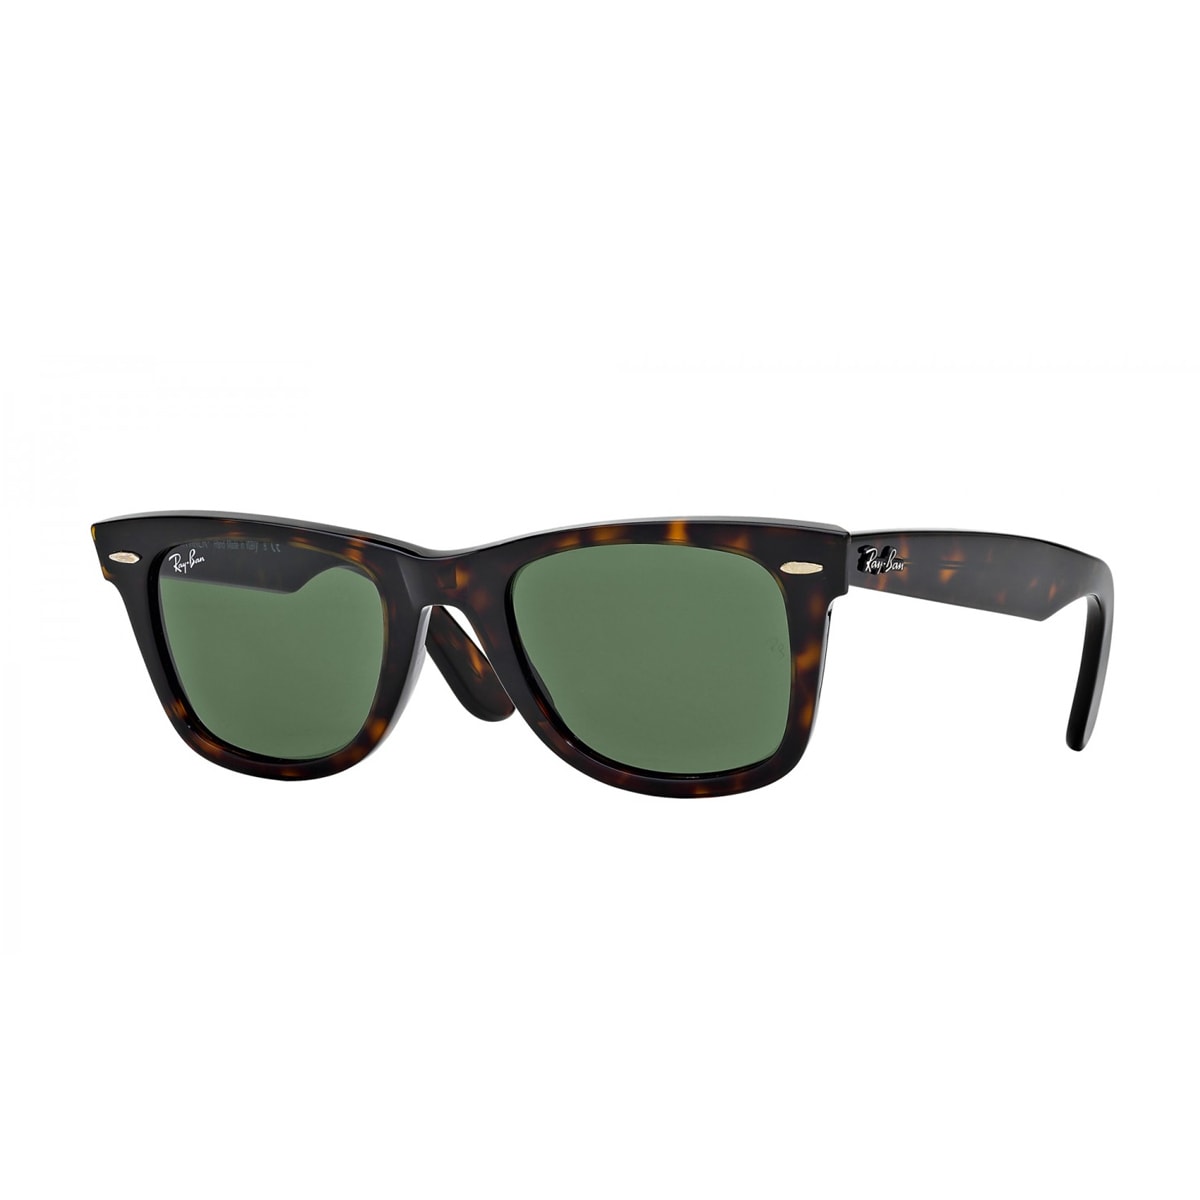 Rb2140f Sunglasses